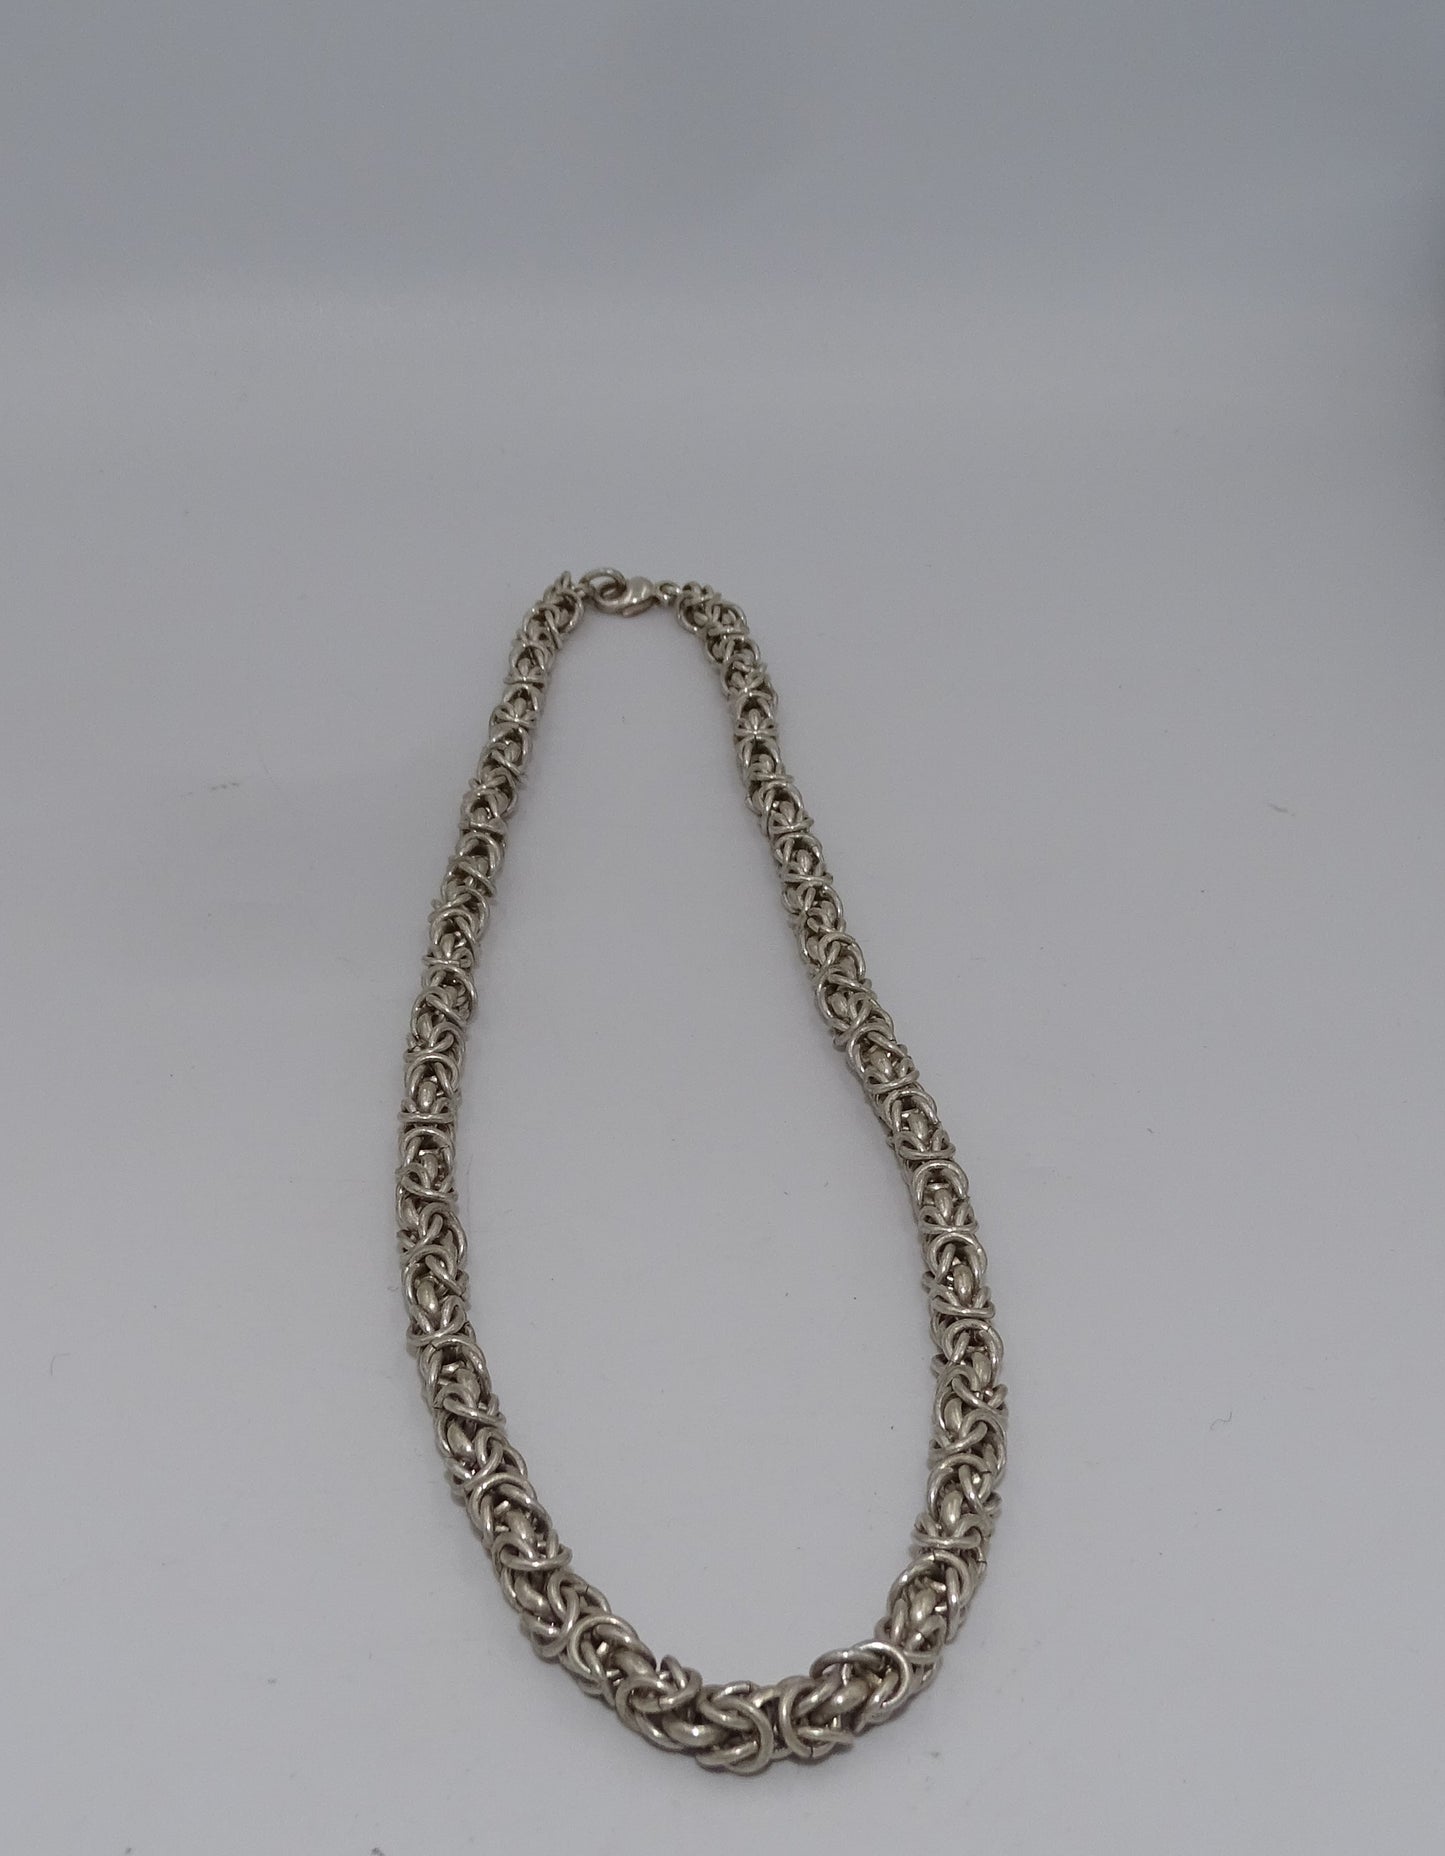 Königskette Silber 925 - 50 cm Länge